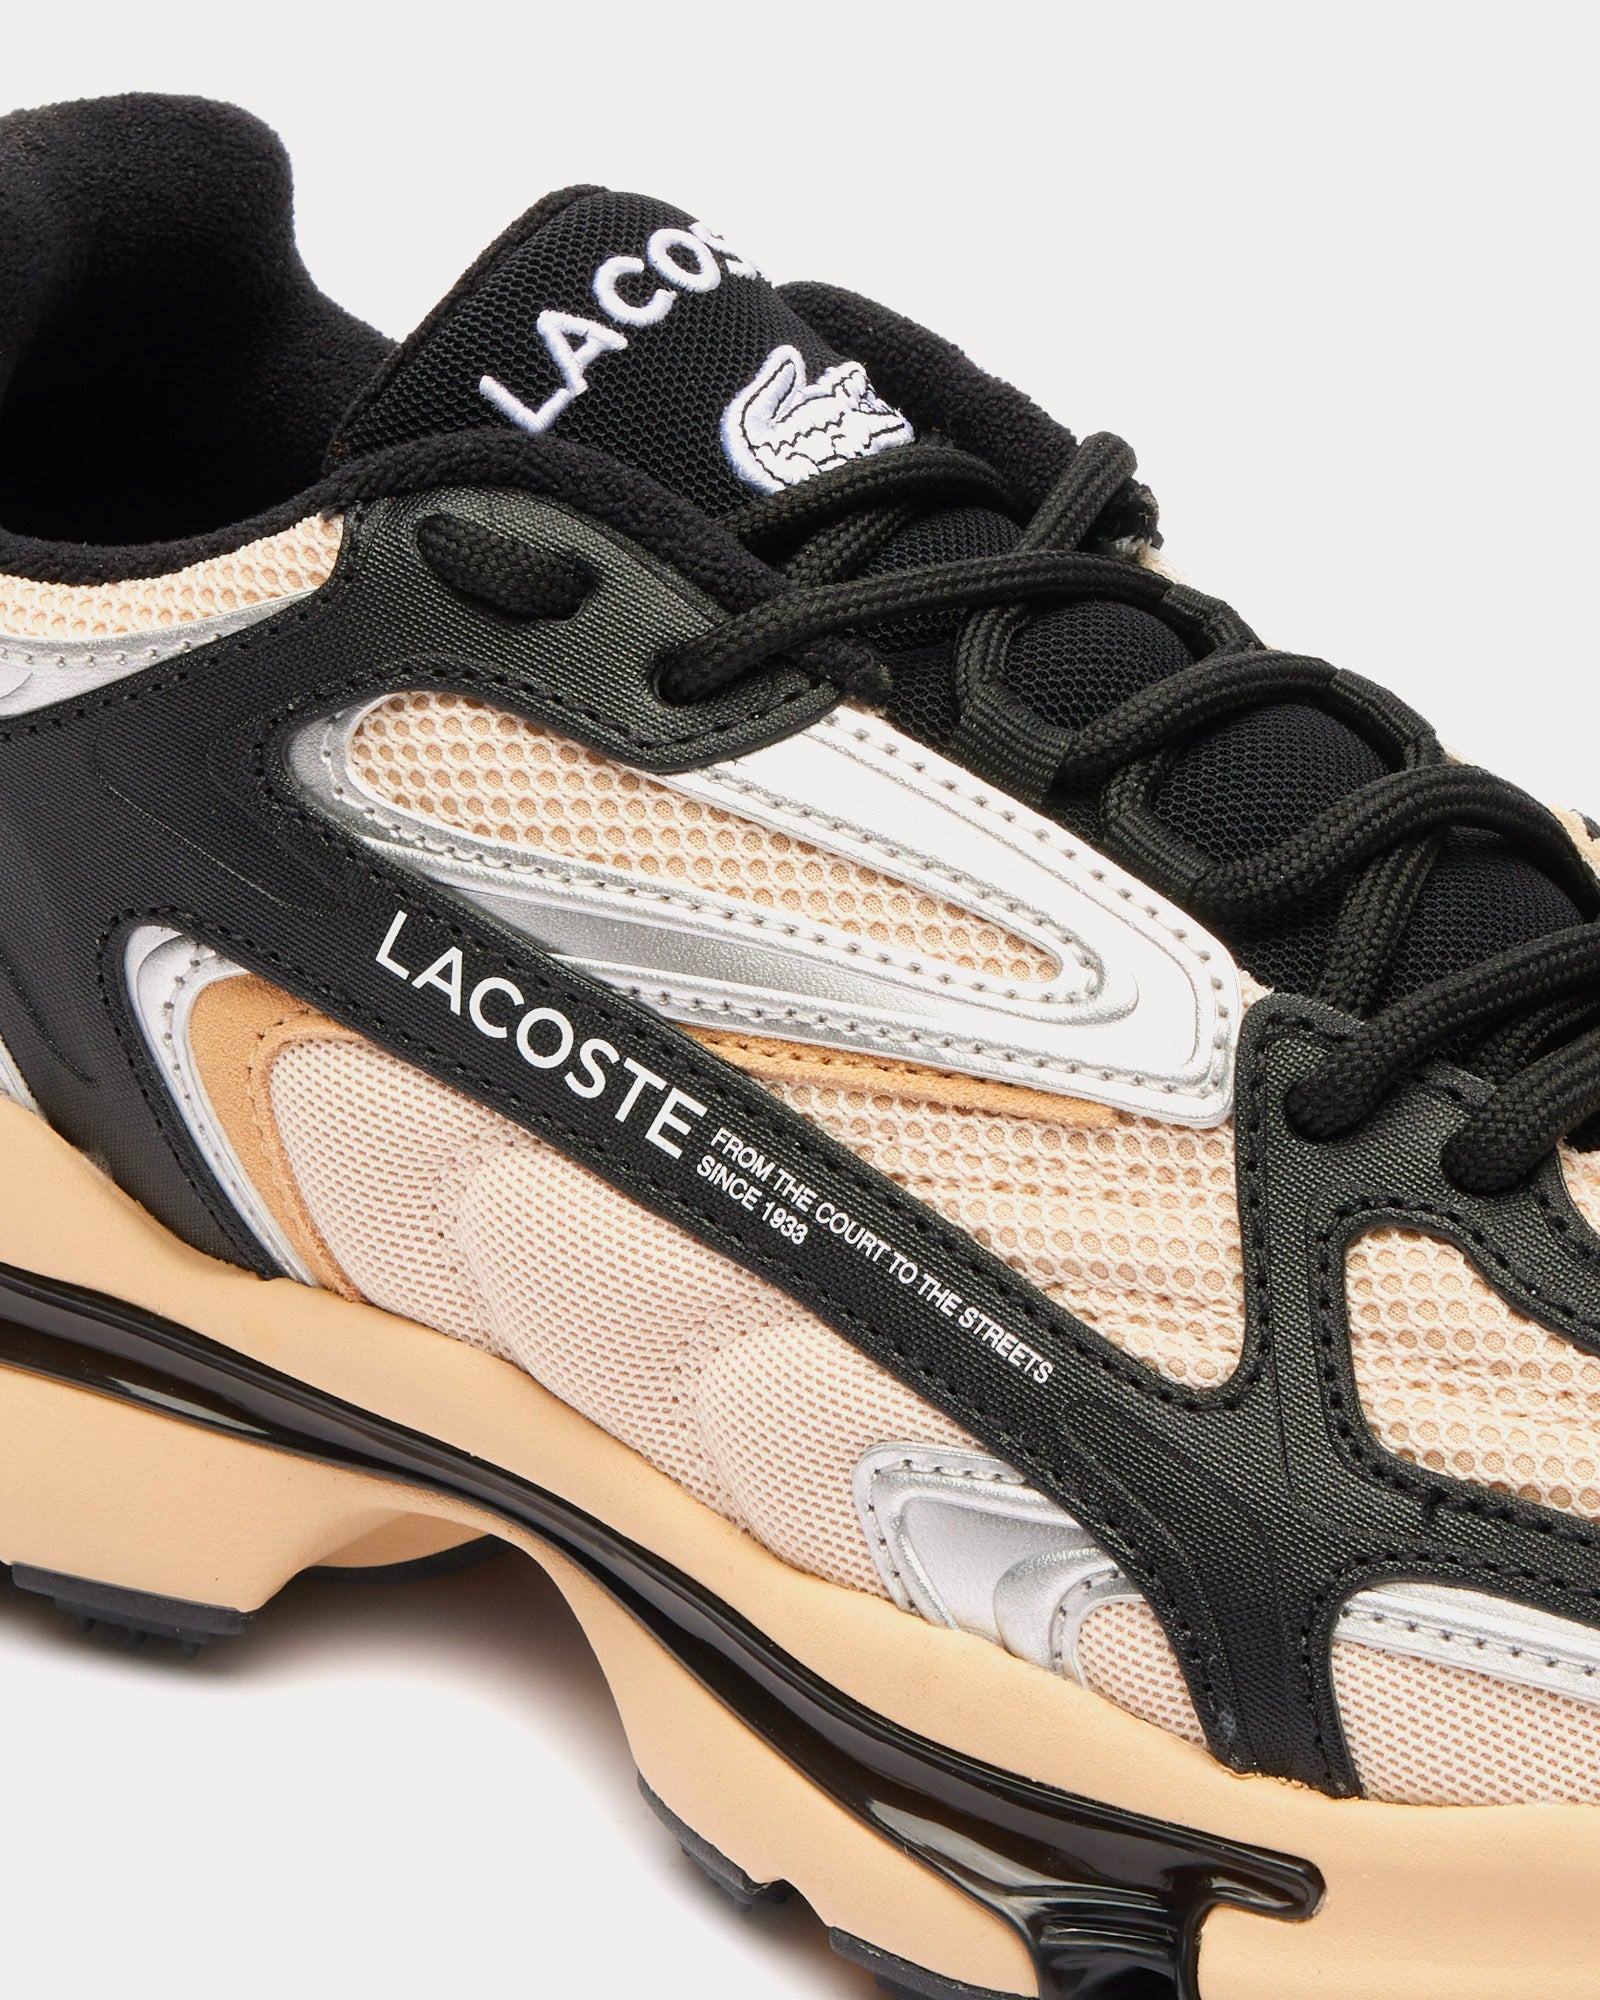 Lacoste - L003 2K24 Light Tan / Black Low Top Sneakers